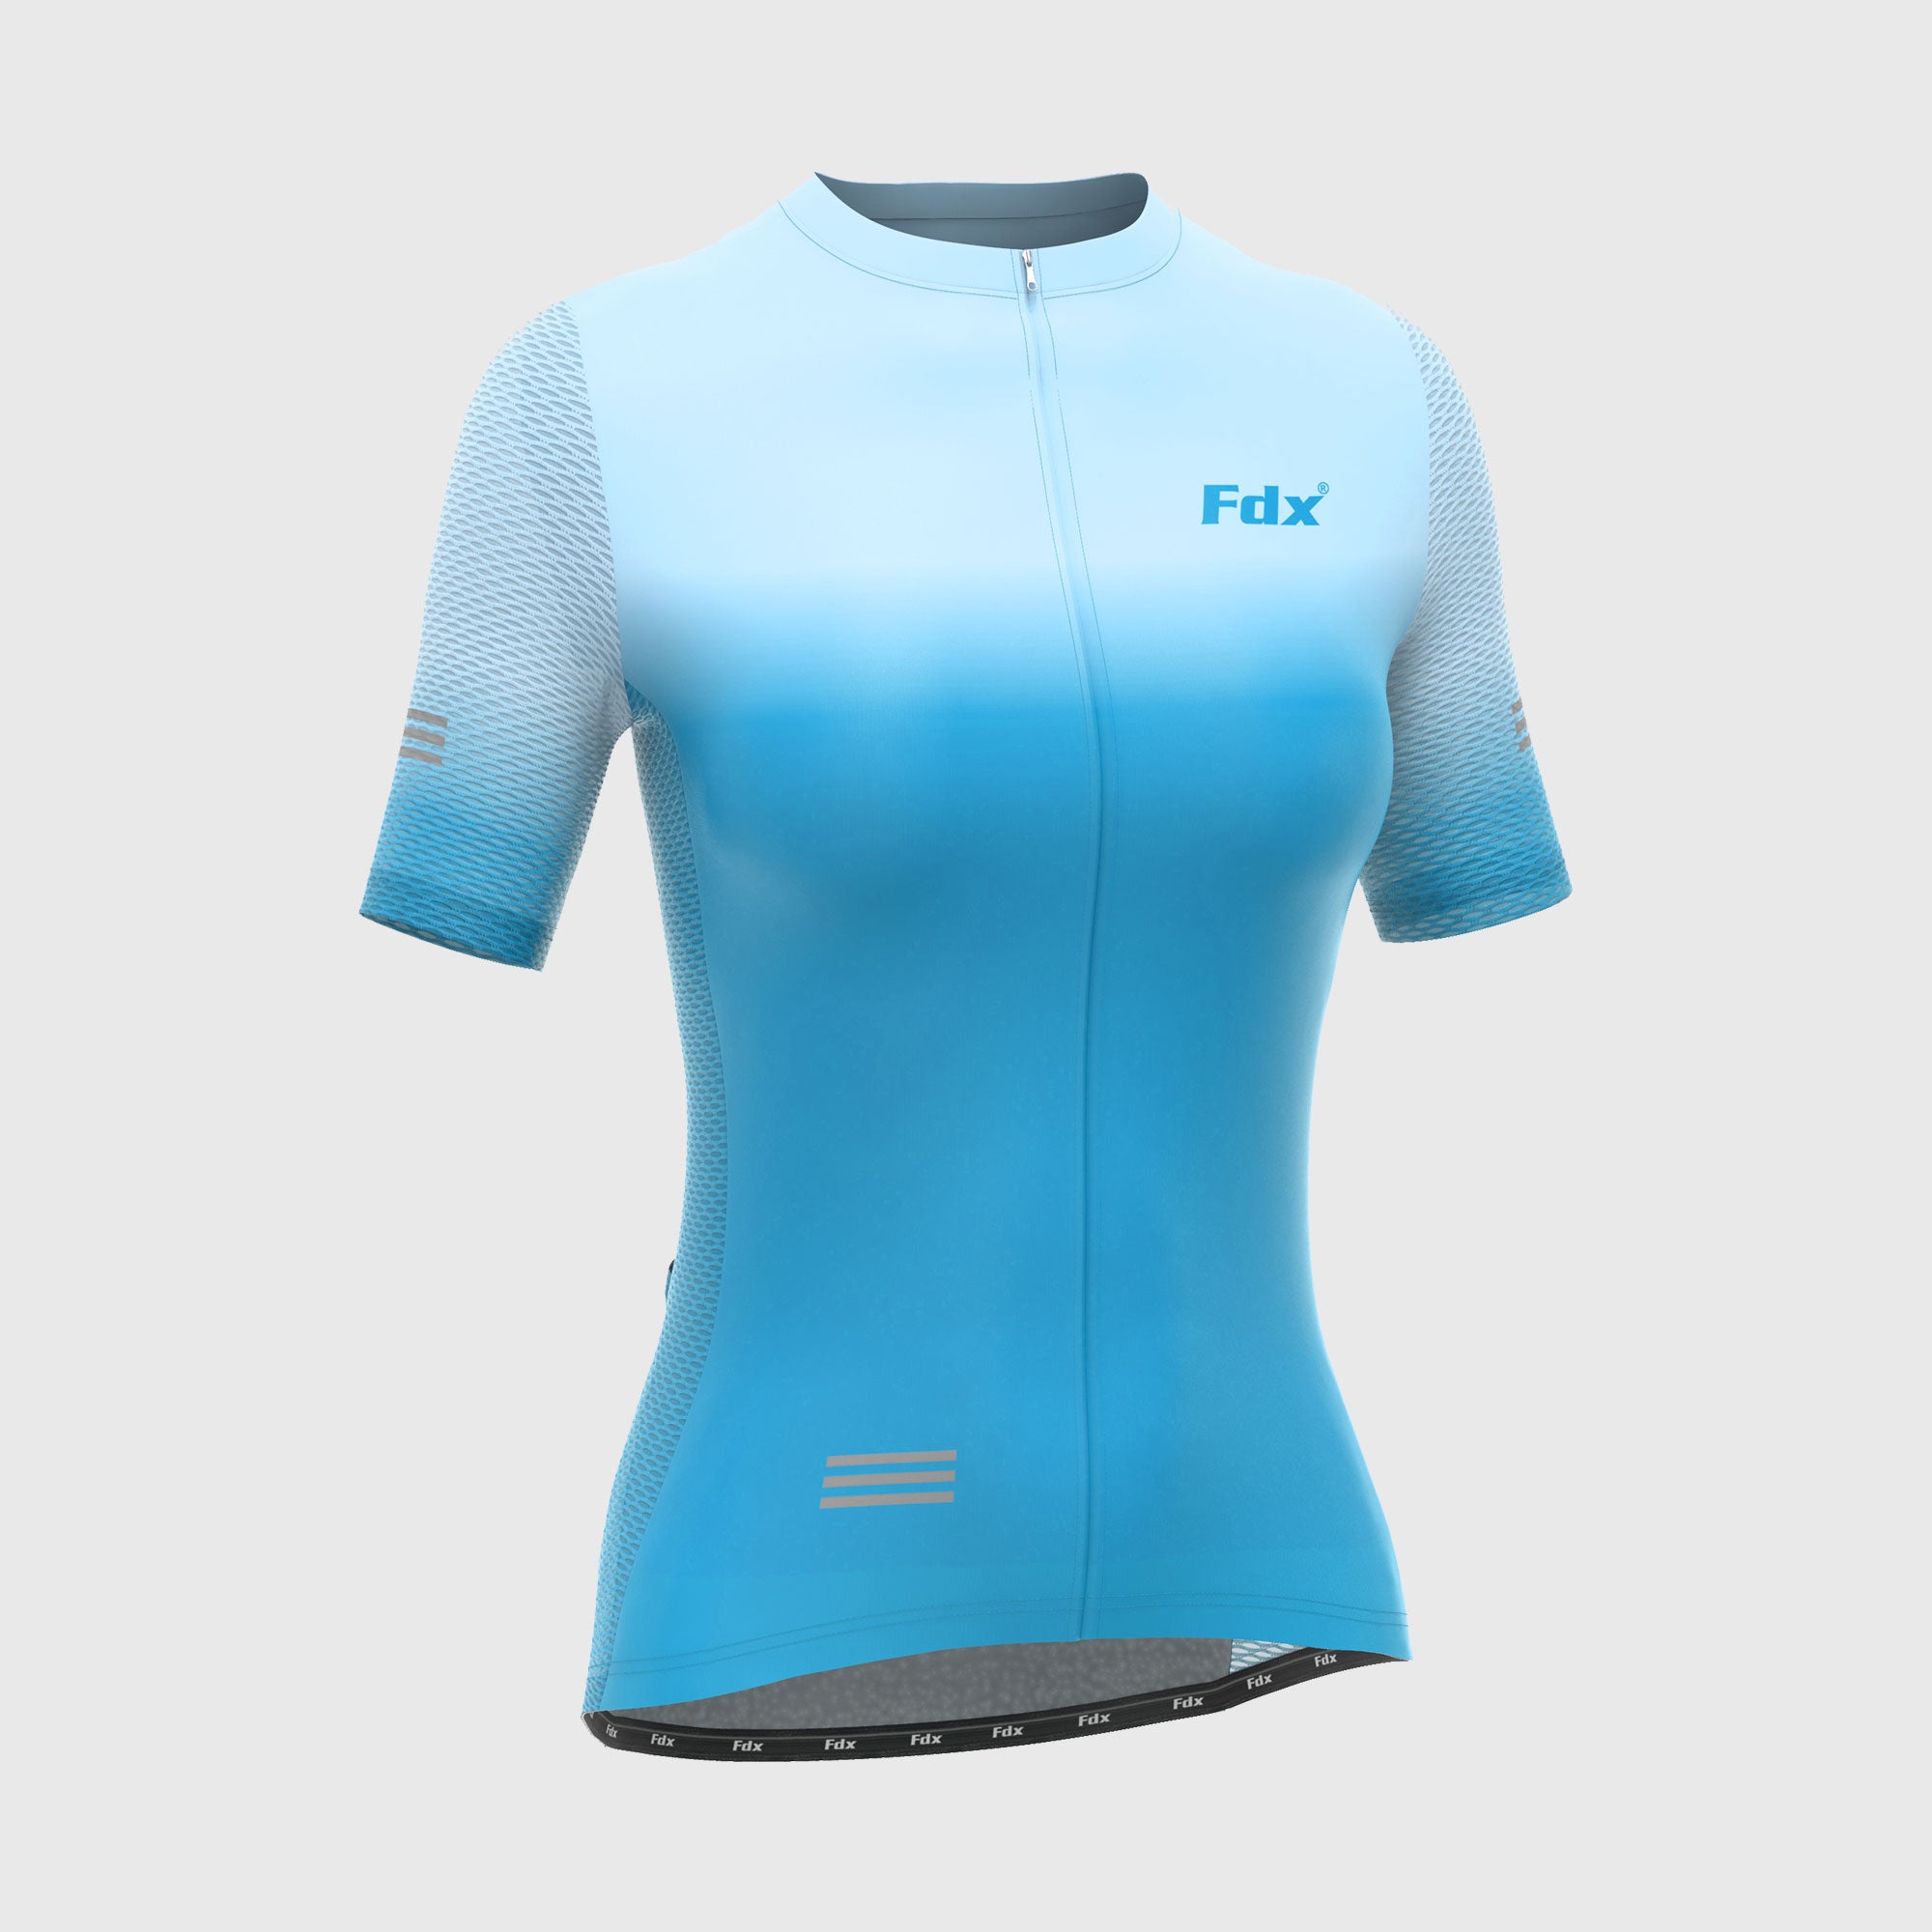 Fdx Women's Blue Short Sleeve Cycling Jersey for Summer Best Road Bike Wear Top Light Weight, Full Zipper, Pockets & Hi-viz Reflectors - Duo